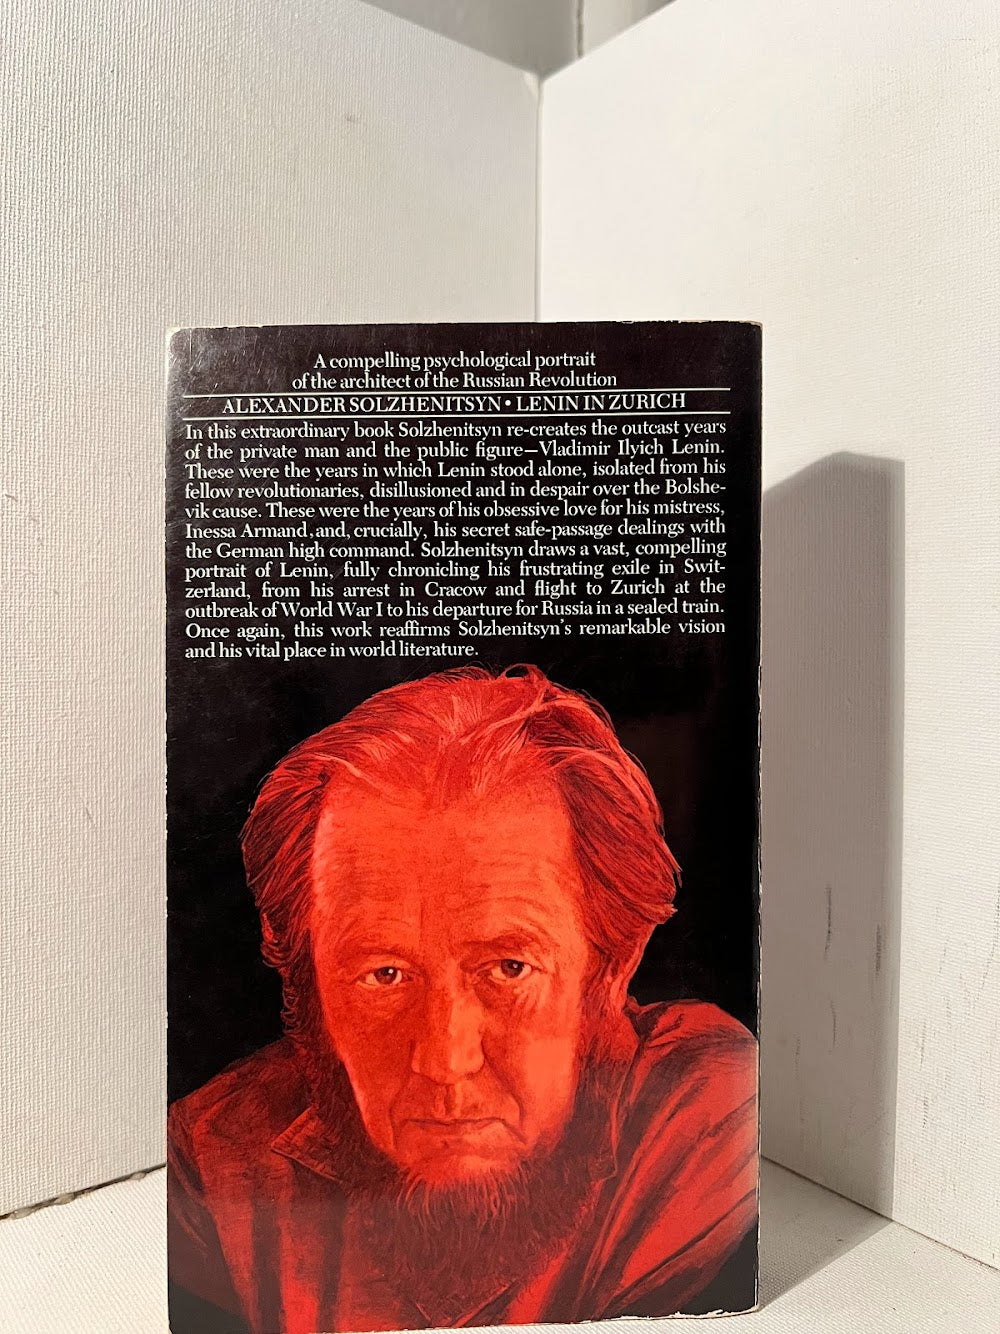 Lenin in Zurich by Alexander Solzhenitsyn